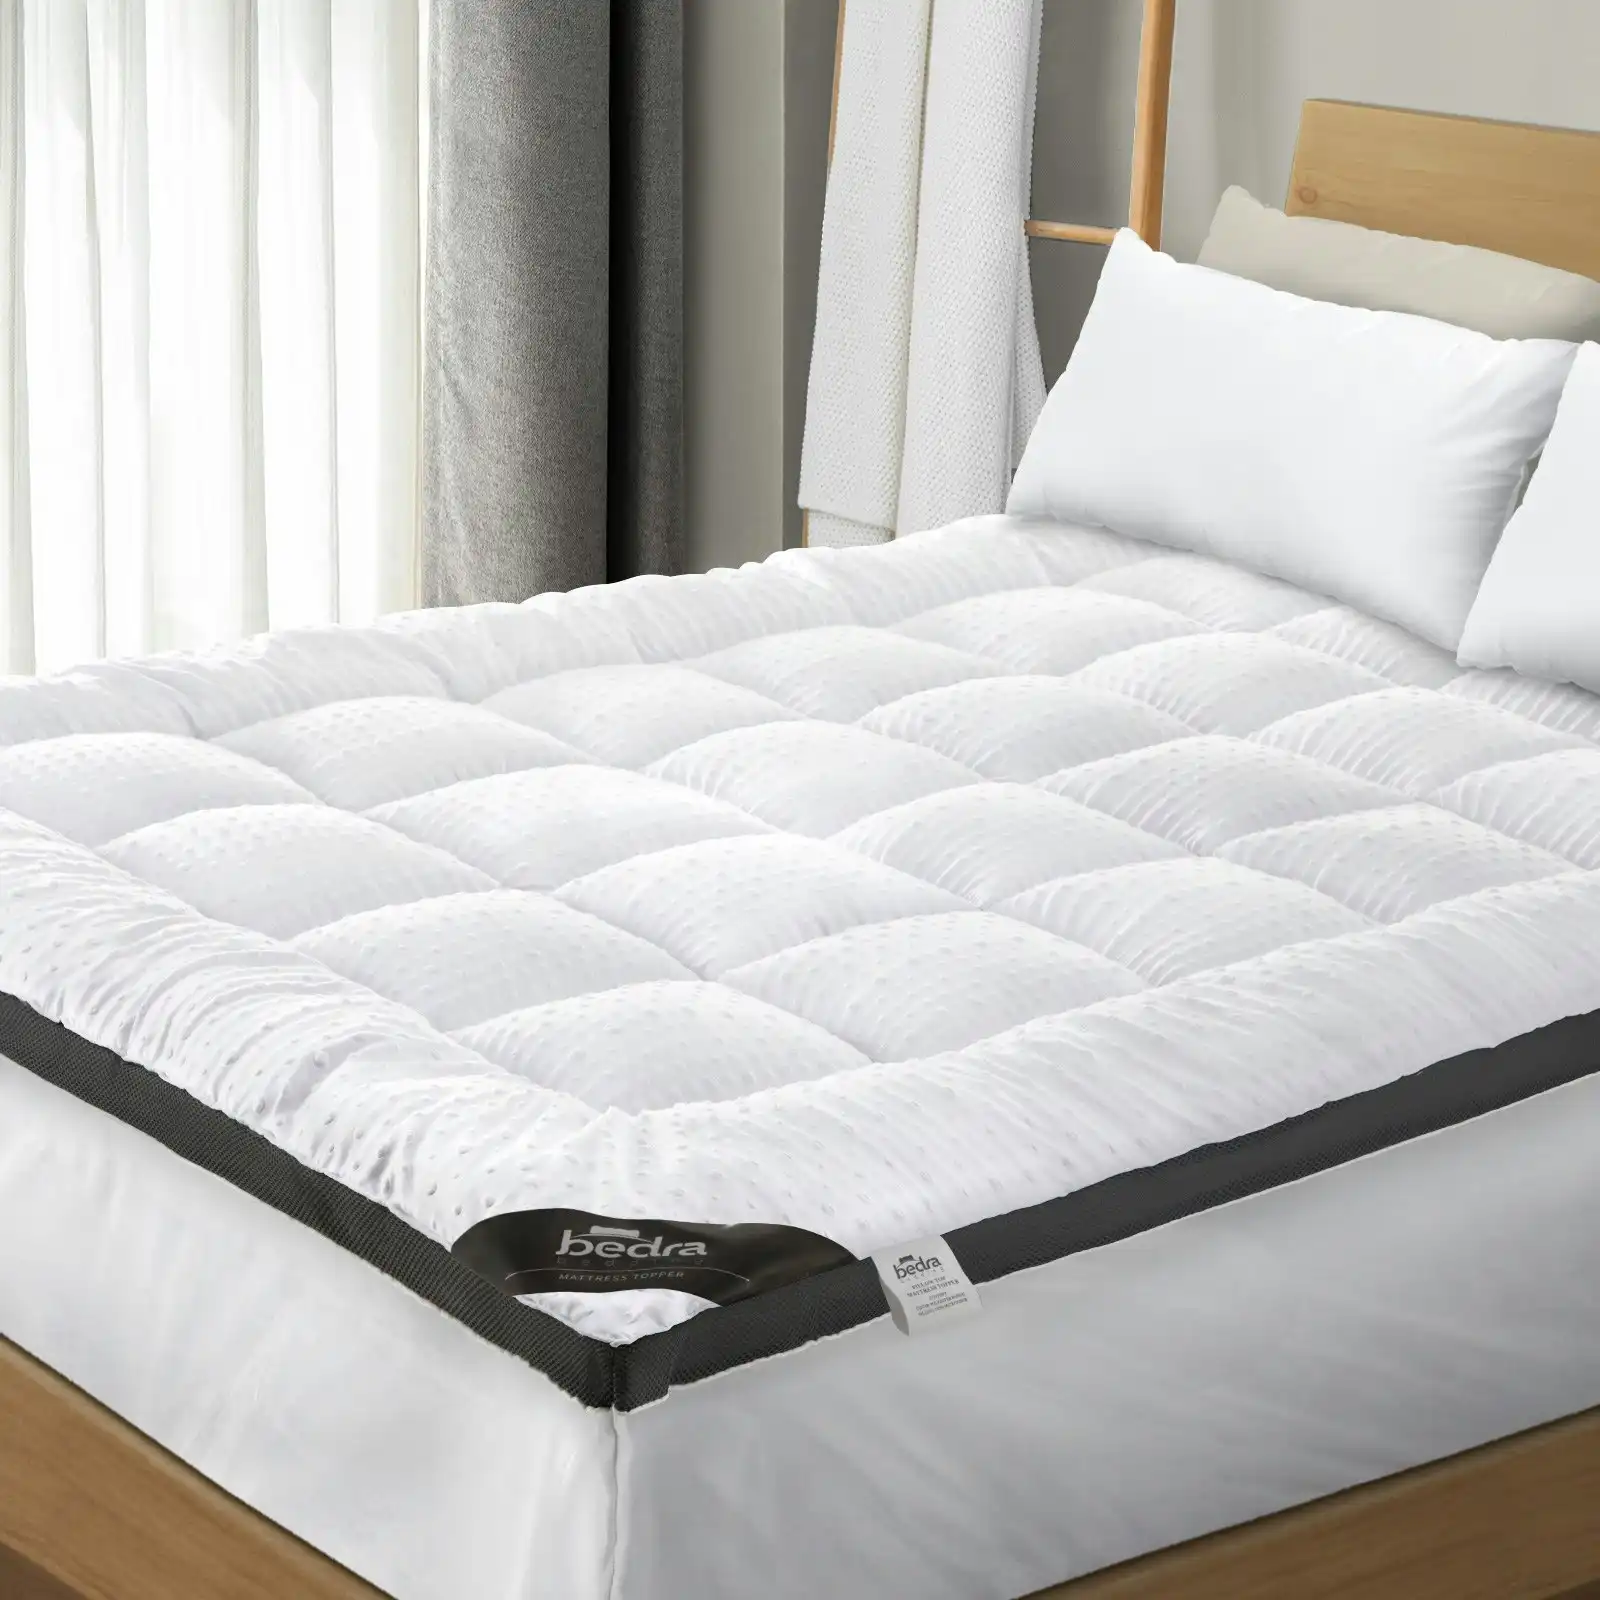 Bedra Mattress Topper Pillowtop Airflow Mesh Design Bed Protector Mat 5cm Single